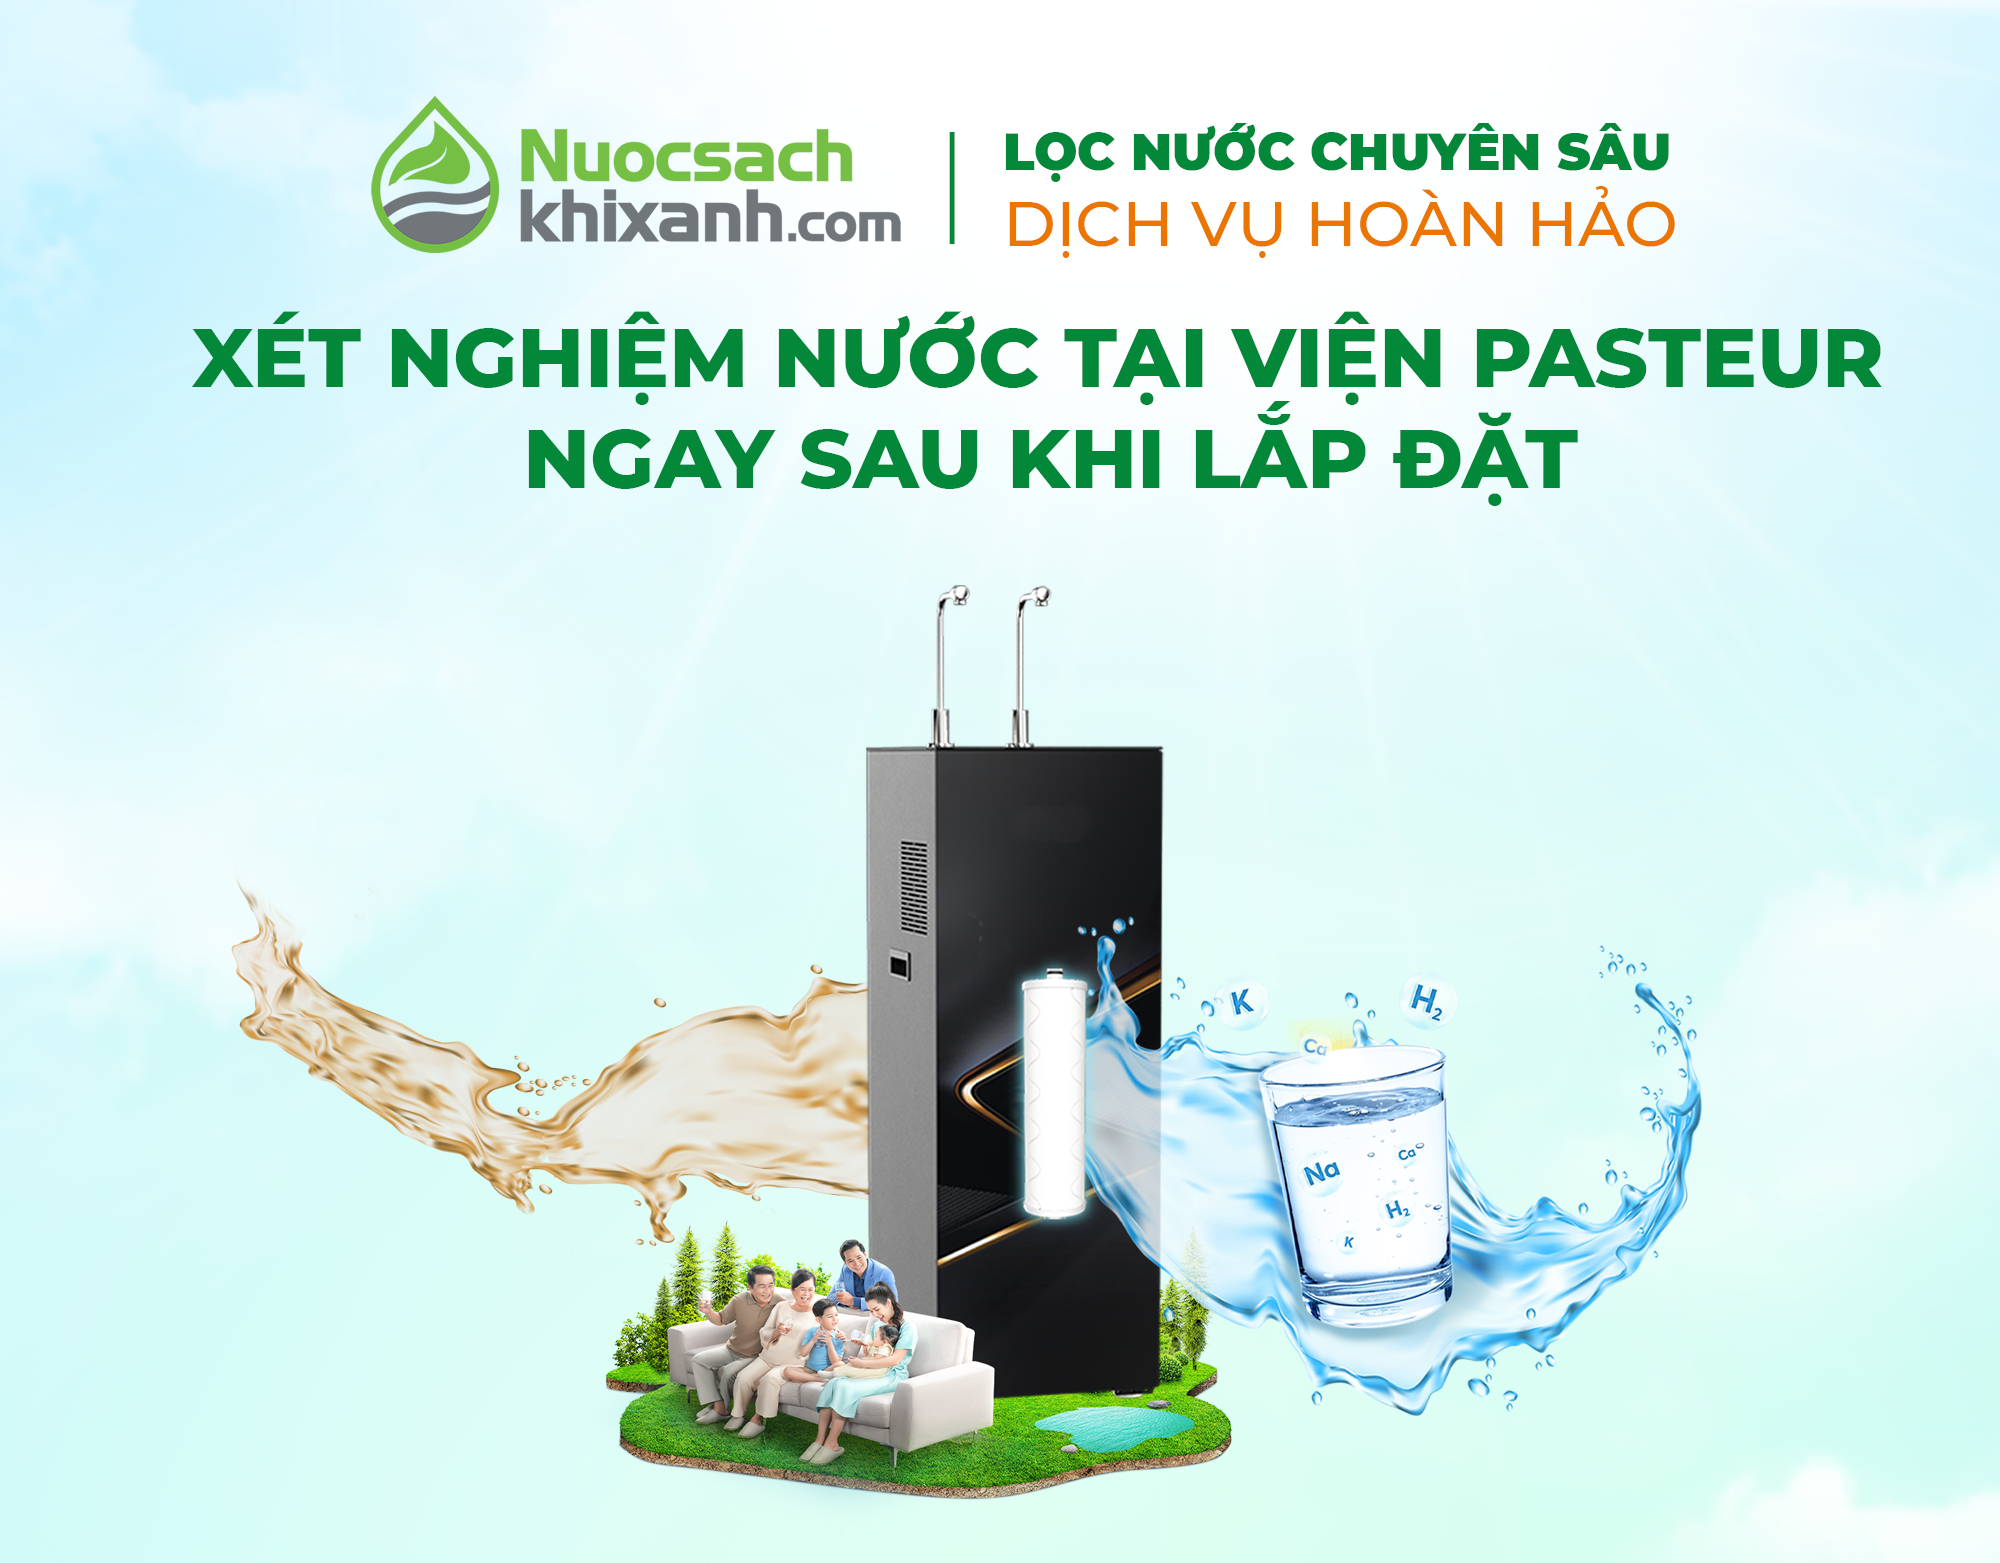 Mua máy lọc nước tại Nuocsachkhixanh.com - Tặng xét nghiệm kiểm định nước tại viện Pasteur ngay sau lắp đặt